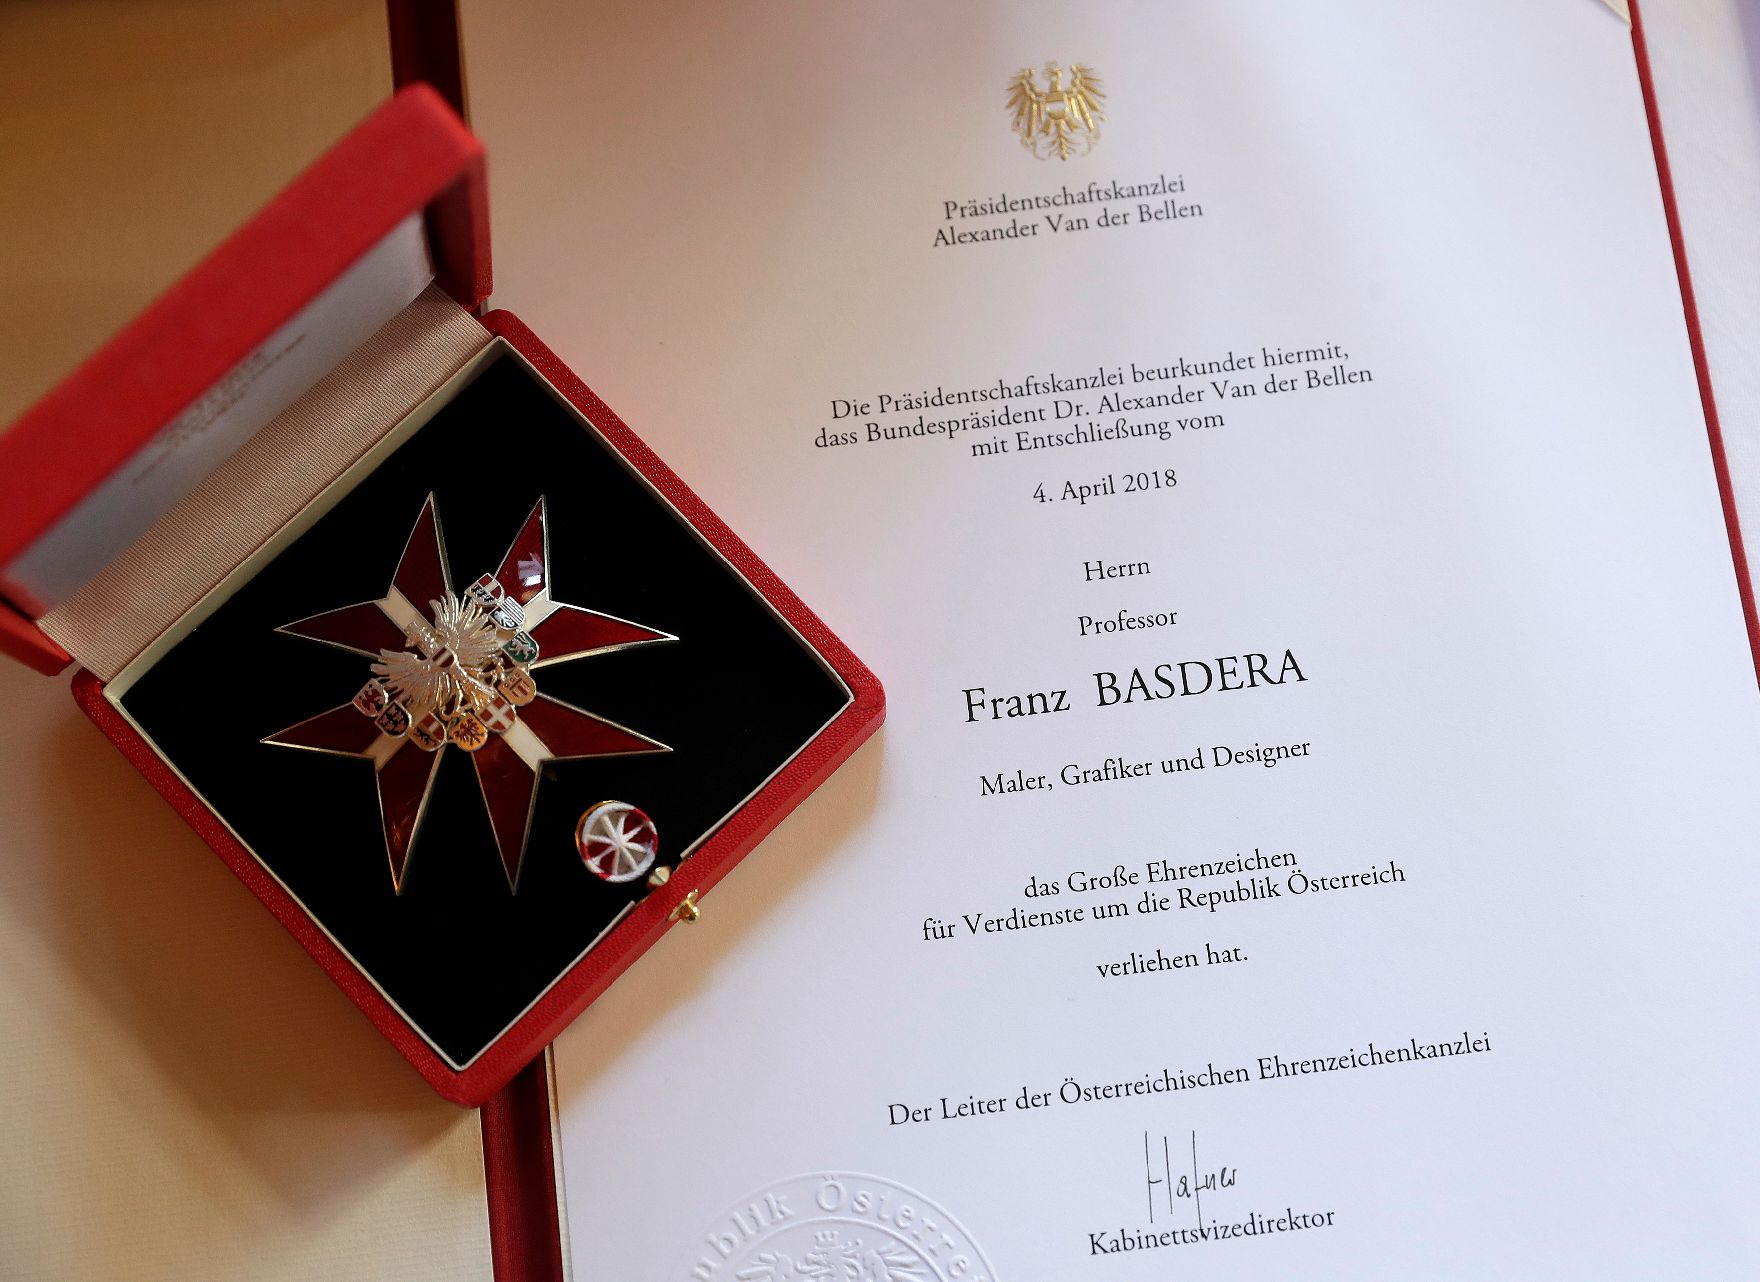 Am 4. Juli 2018 wurden die Urkunde über die Verleihung des Berufstitels Professor an Kurt Philipp und das Große Ehrenzeichen für Verdienste um die Republik Österreich an Franz Basdera überreicht.